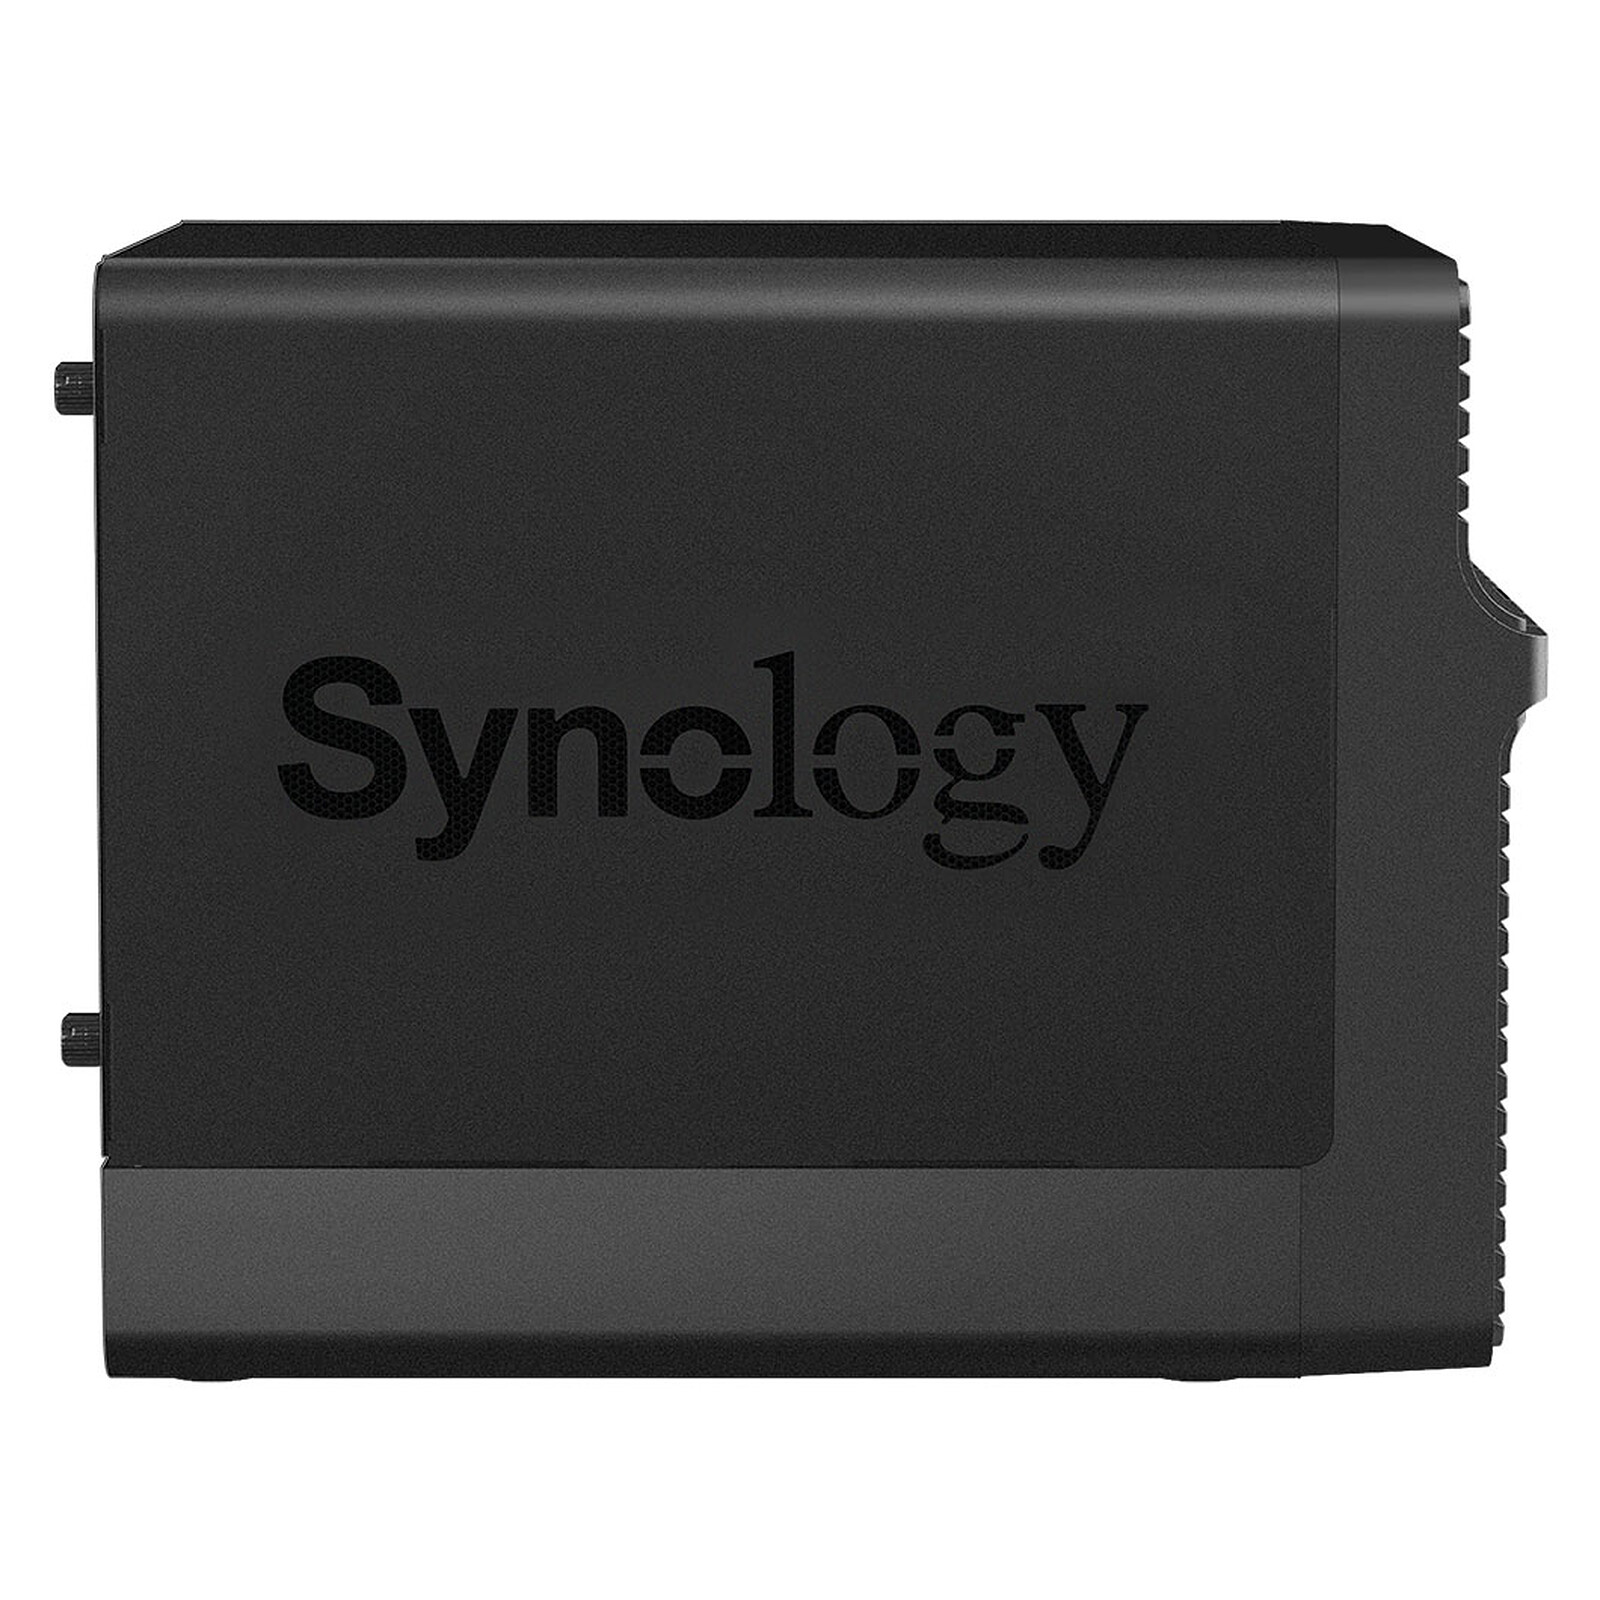 Serveur Synology DiskStation DS420+ 4 baies (sans disque dur) – E-SHOP